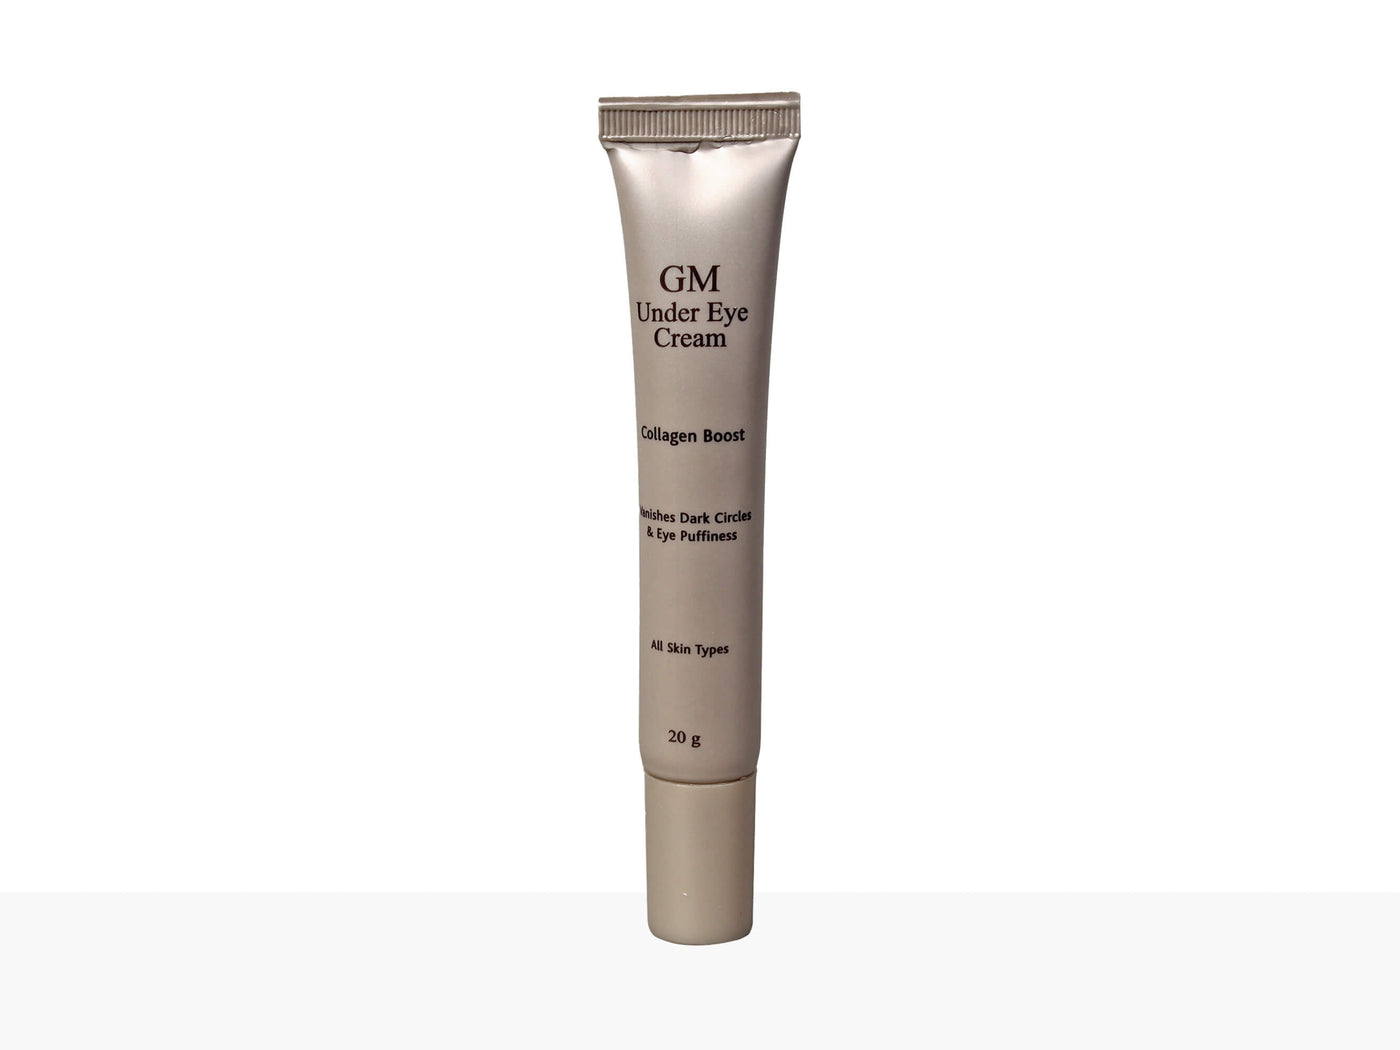 GM-Under Eye Cream (Collagen Boost) All Skin Types - Clinikally